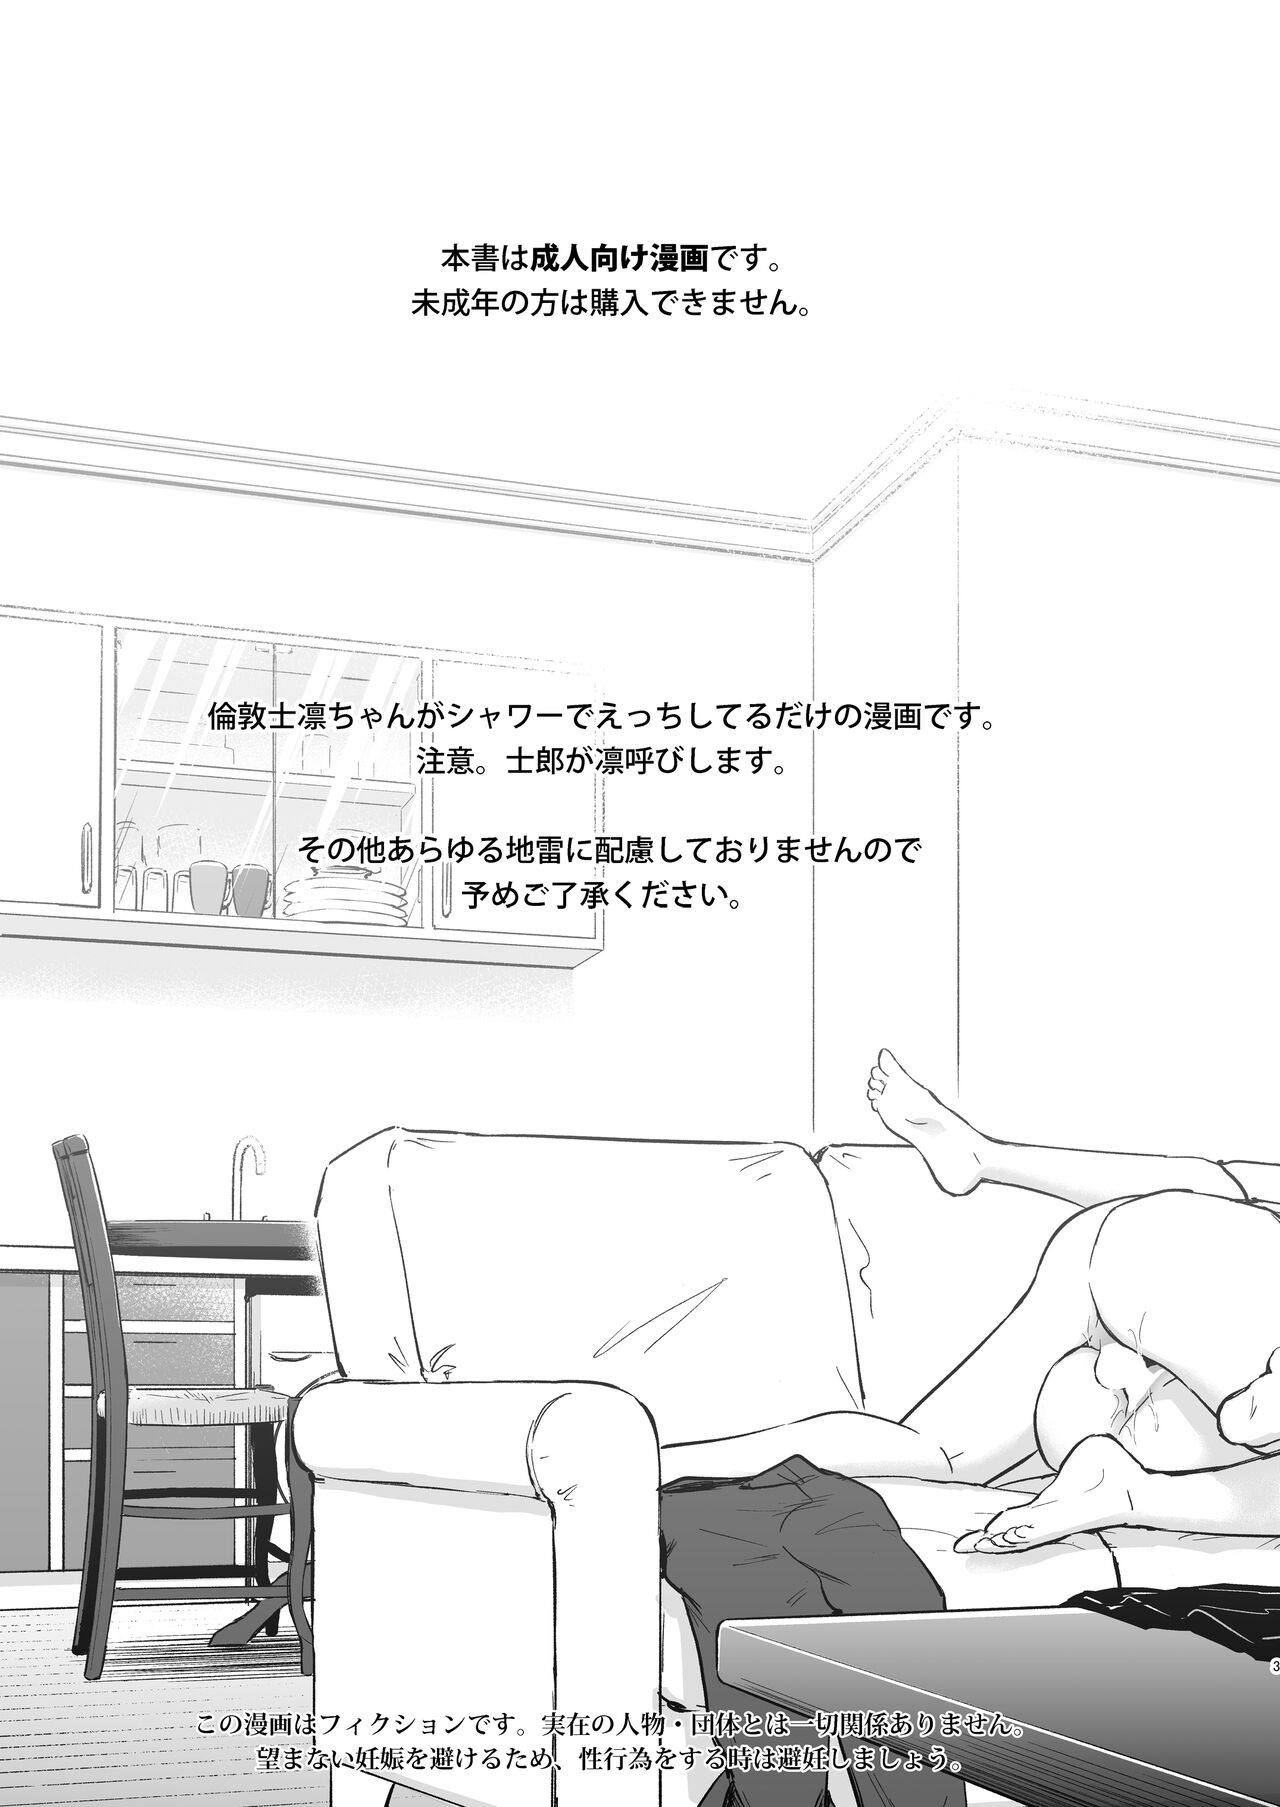 [すのーりっち (いいだ豊雪)] Second Semester II (Fate/stay night) [DL版]